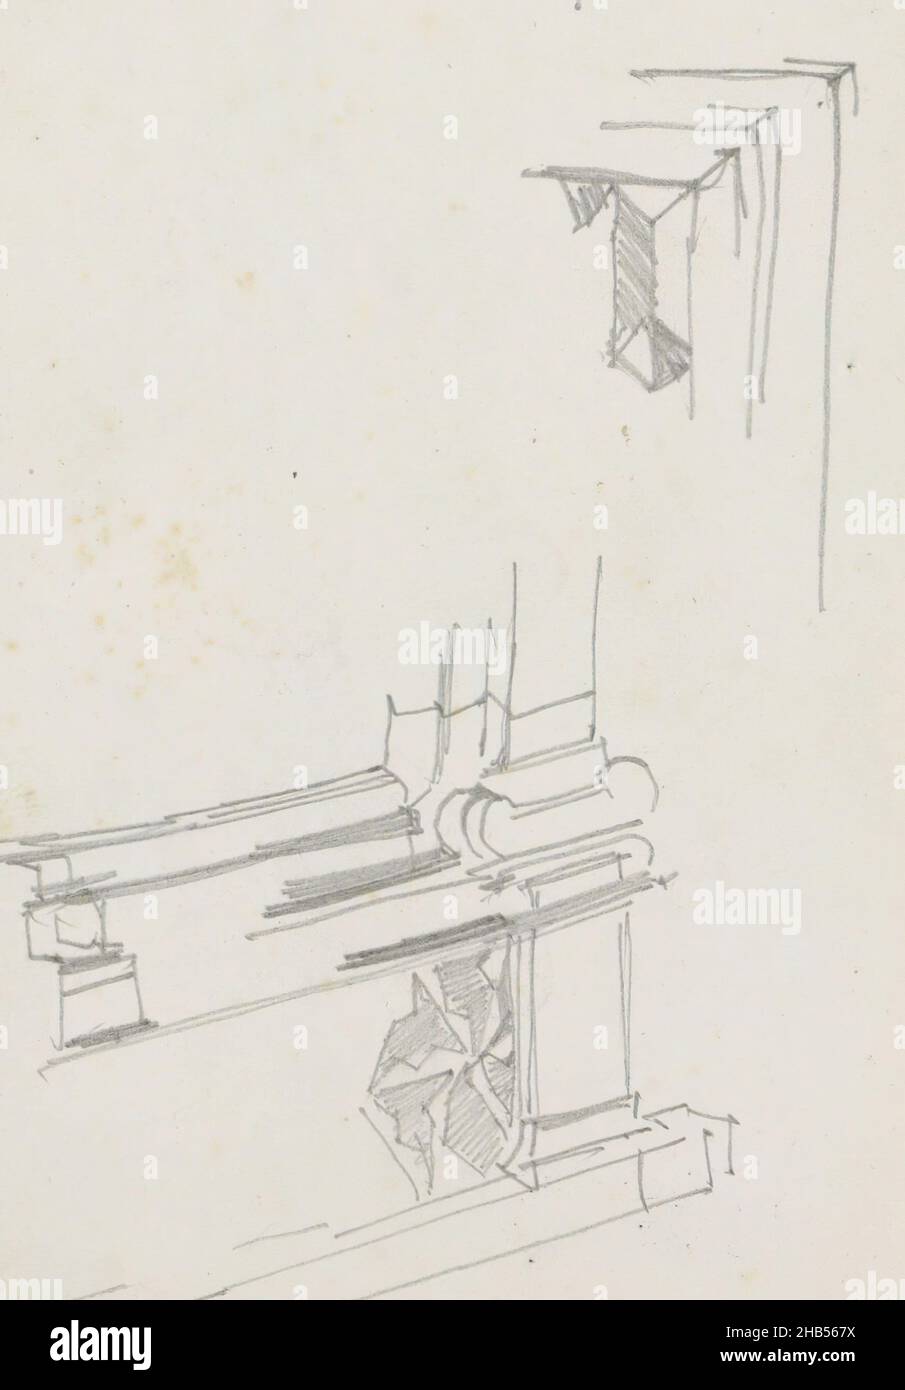 Seite 129 aus einem Skizzenbuch mit 72 Blättern, Architekturstudien, möglicherweise aus einem Portal., Zeichner: George Hendrik Breitner, Zuid-Holland, 1880 - 1882, George Hendrik Breitner, 1880 - 1882 Stockfoto